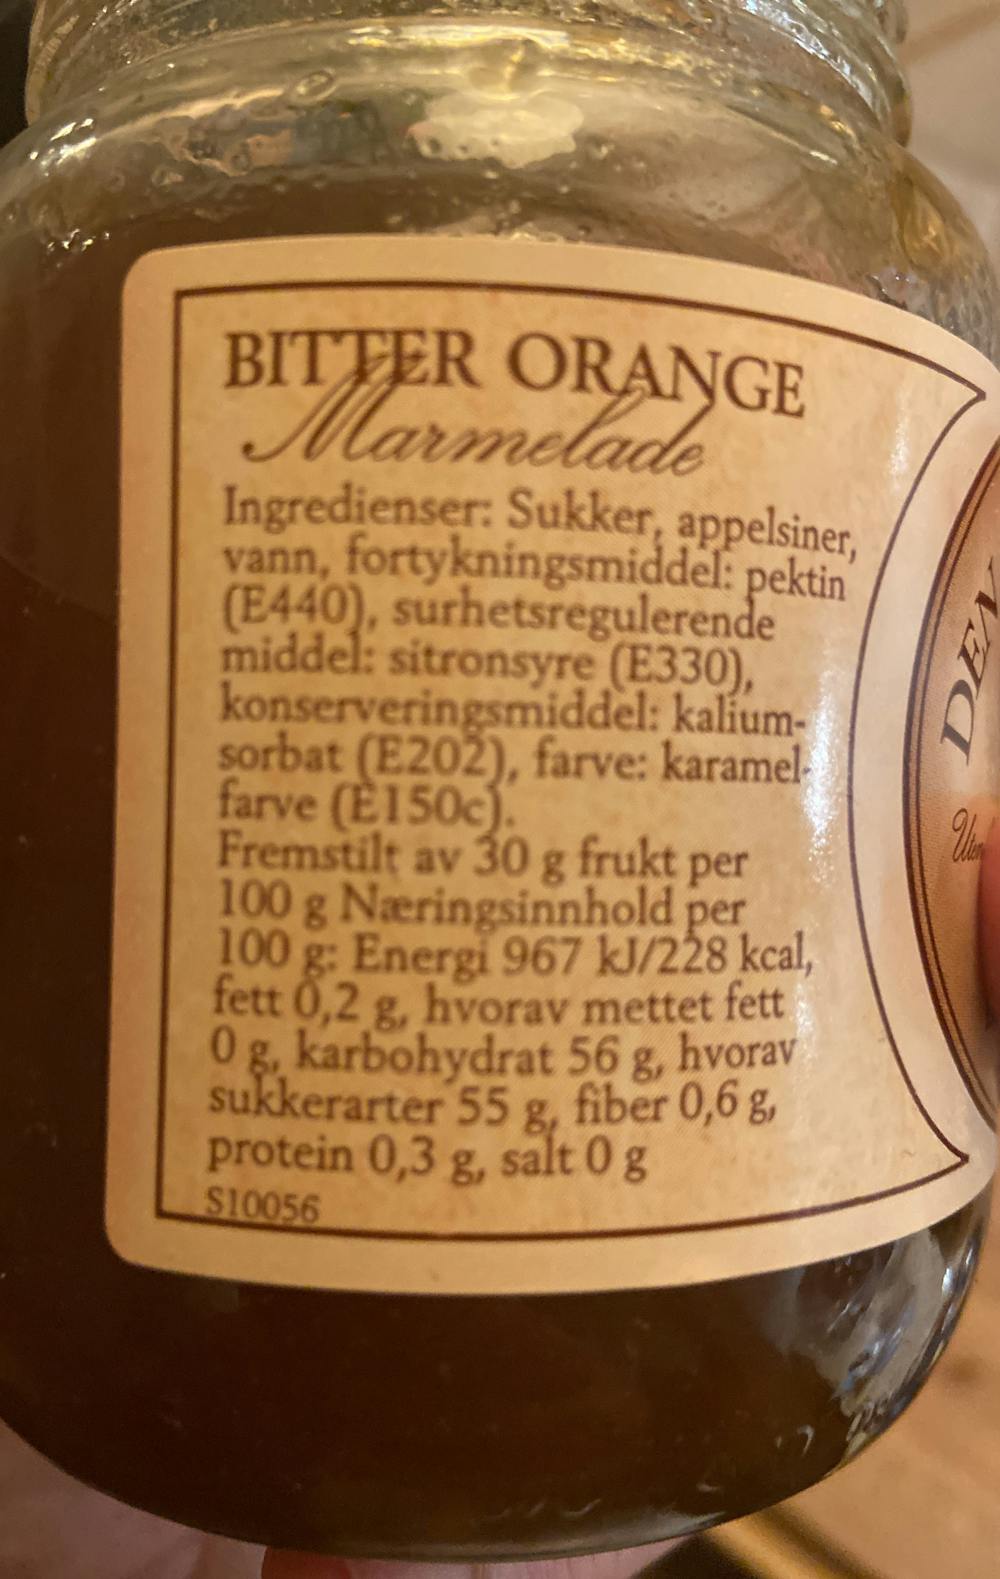 Ingredienslisten til Bitter orange, Den gamle frugthave